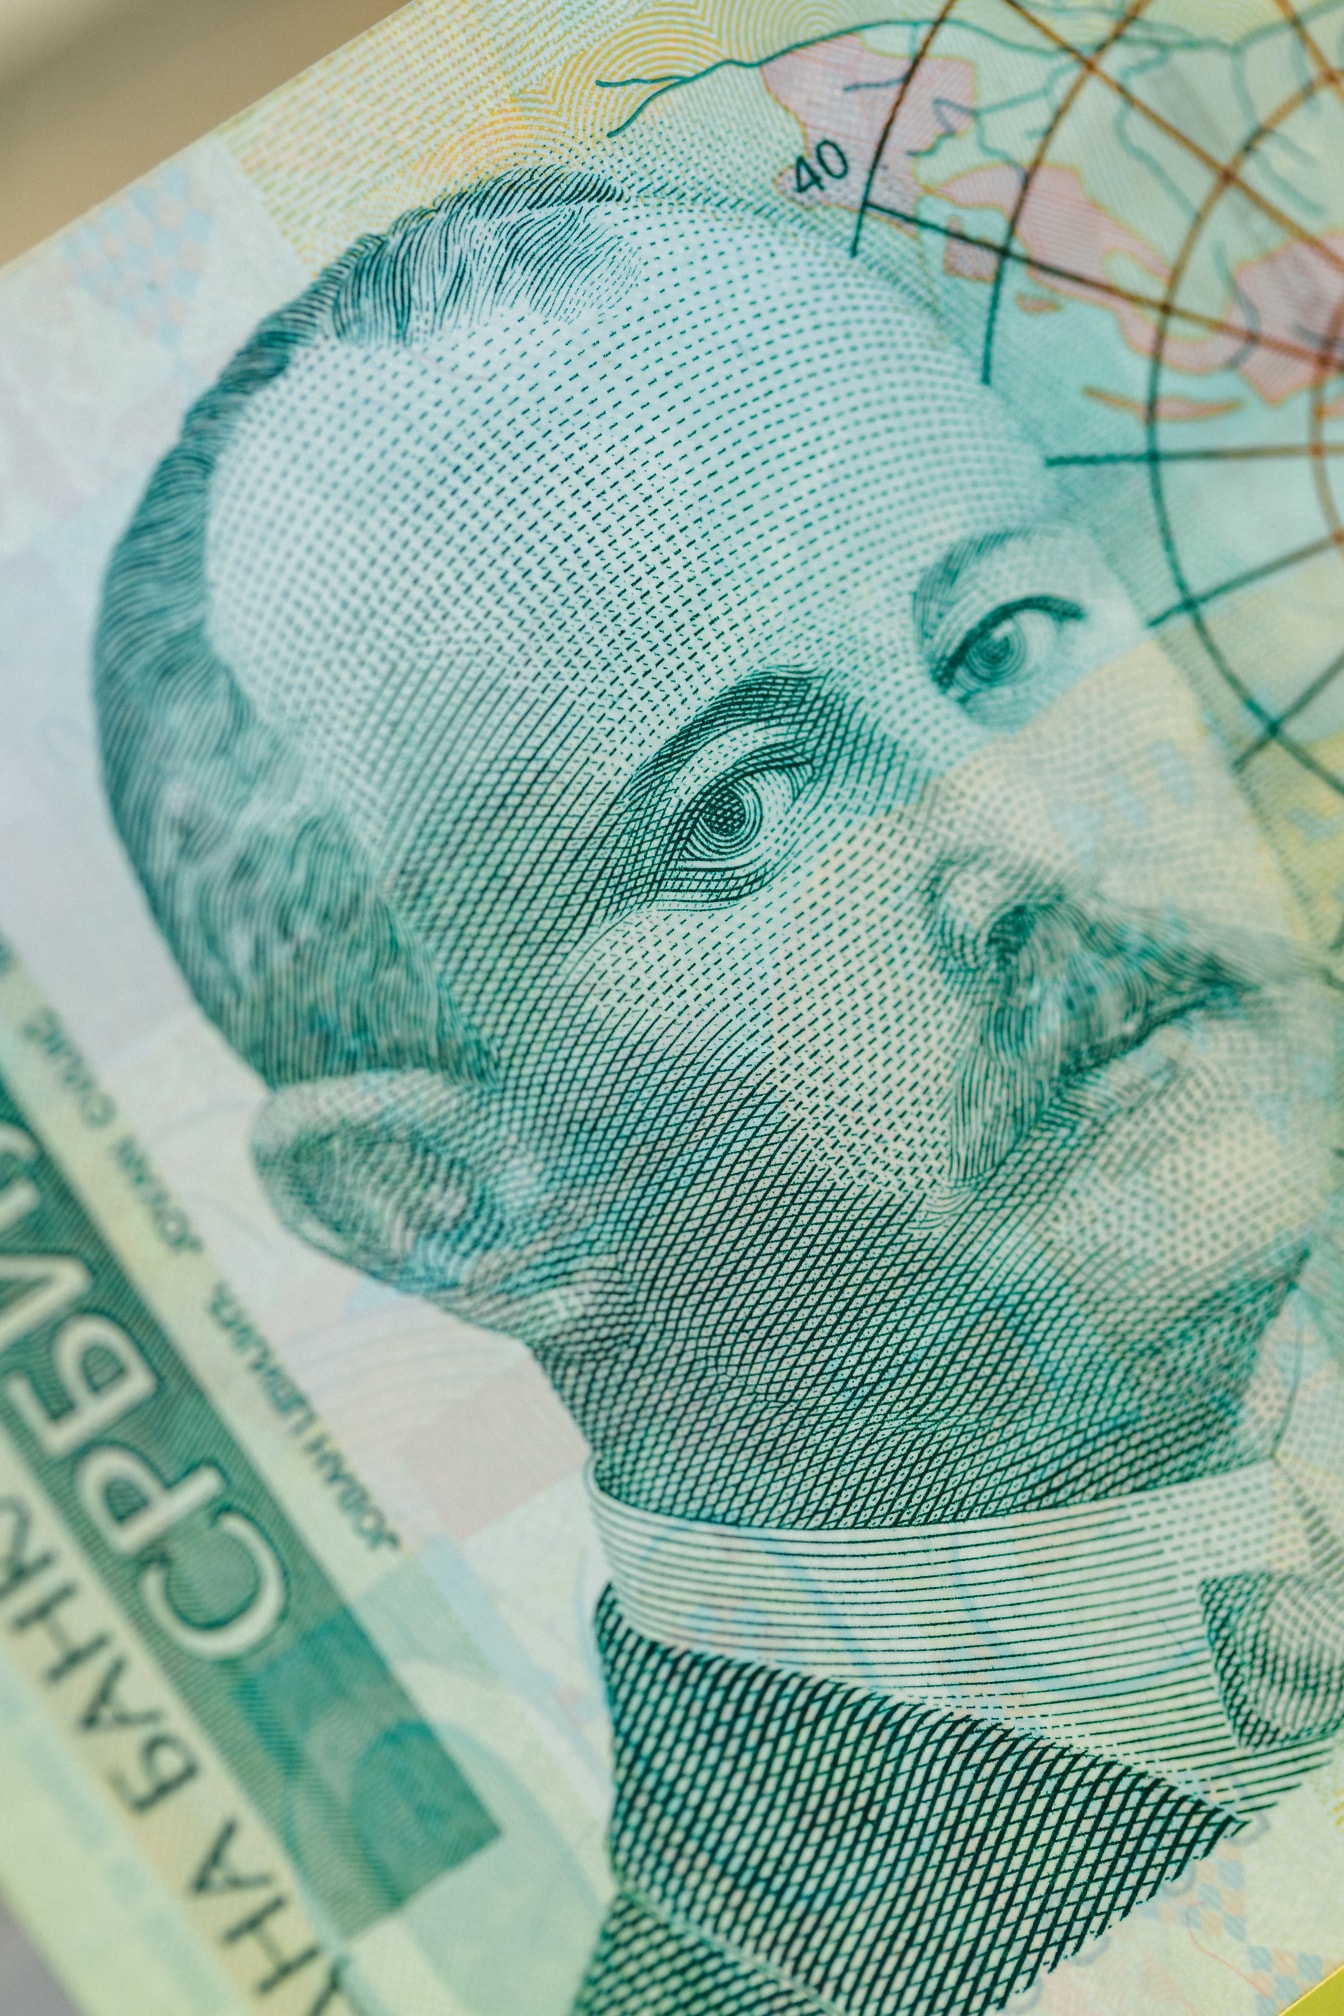 Fotografia em close-up da nota de 500 dinares sérvios com retrato de Jovan Cvijic